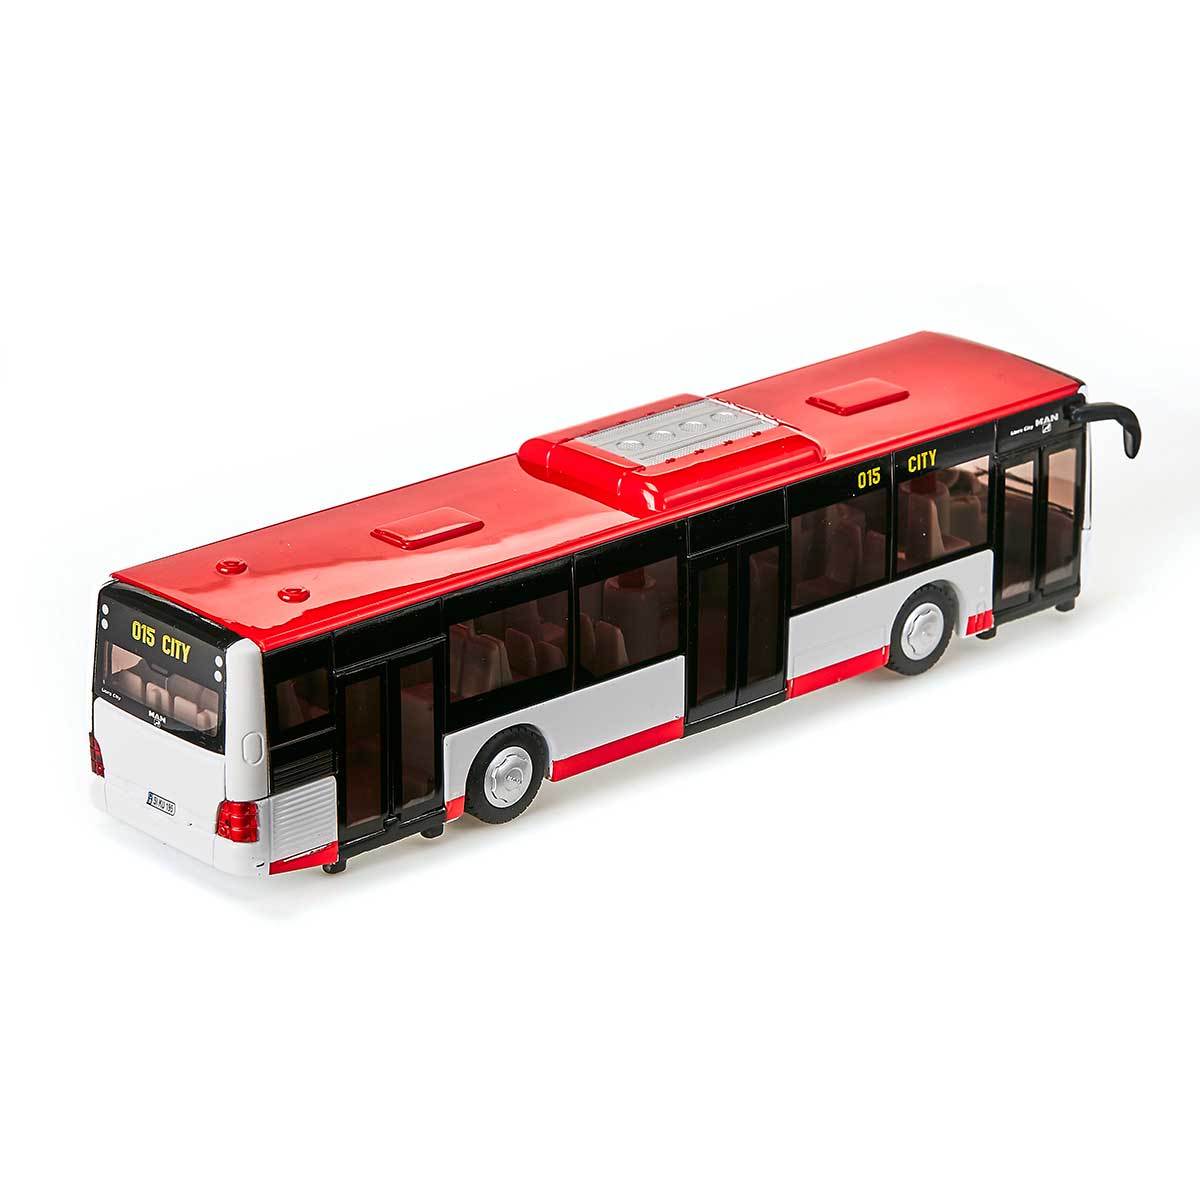 MAN 路線バス: ボーネルンド オンラインショップ。世界中の知育玩具など、あそび道具がたくさん。0歳からのお子様へのプレゼントにも。